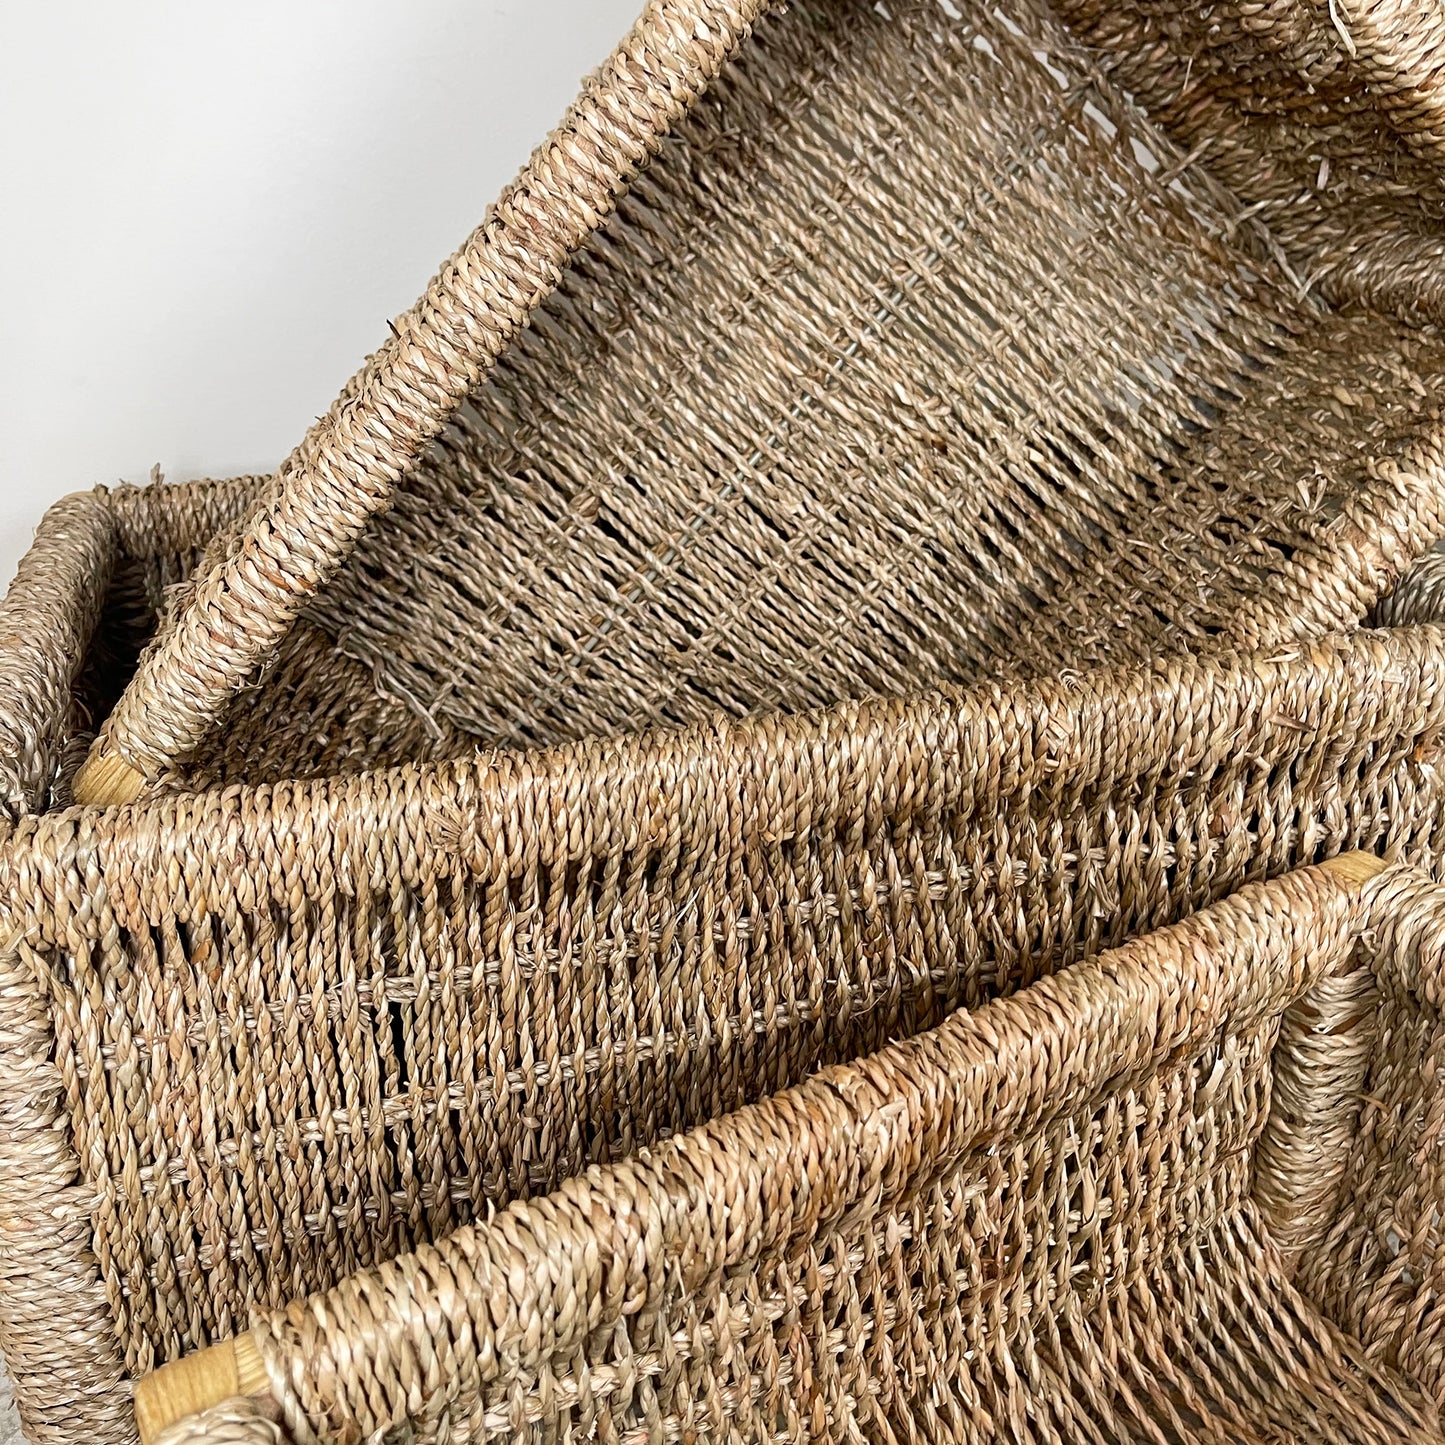 Seagrass Storage Baskets